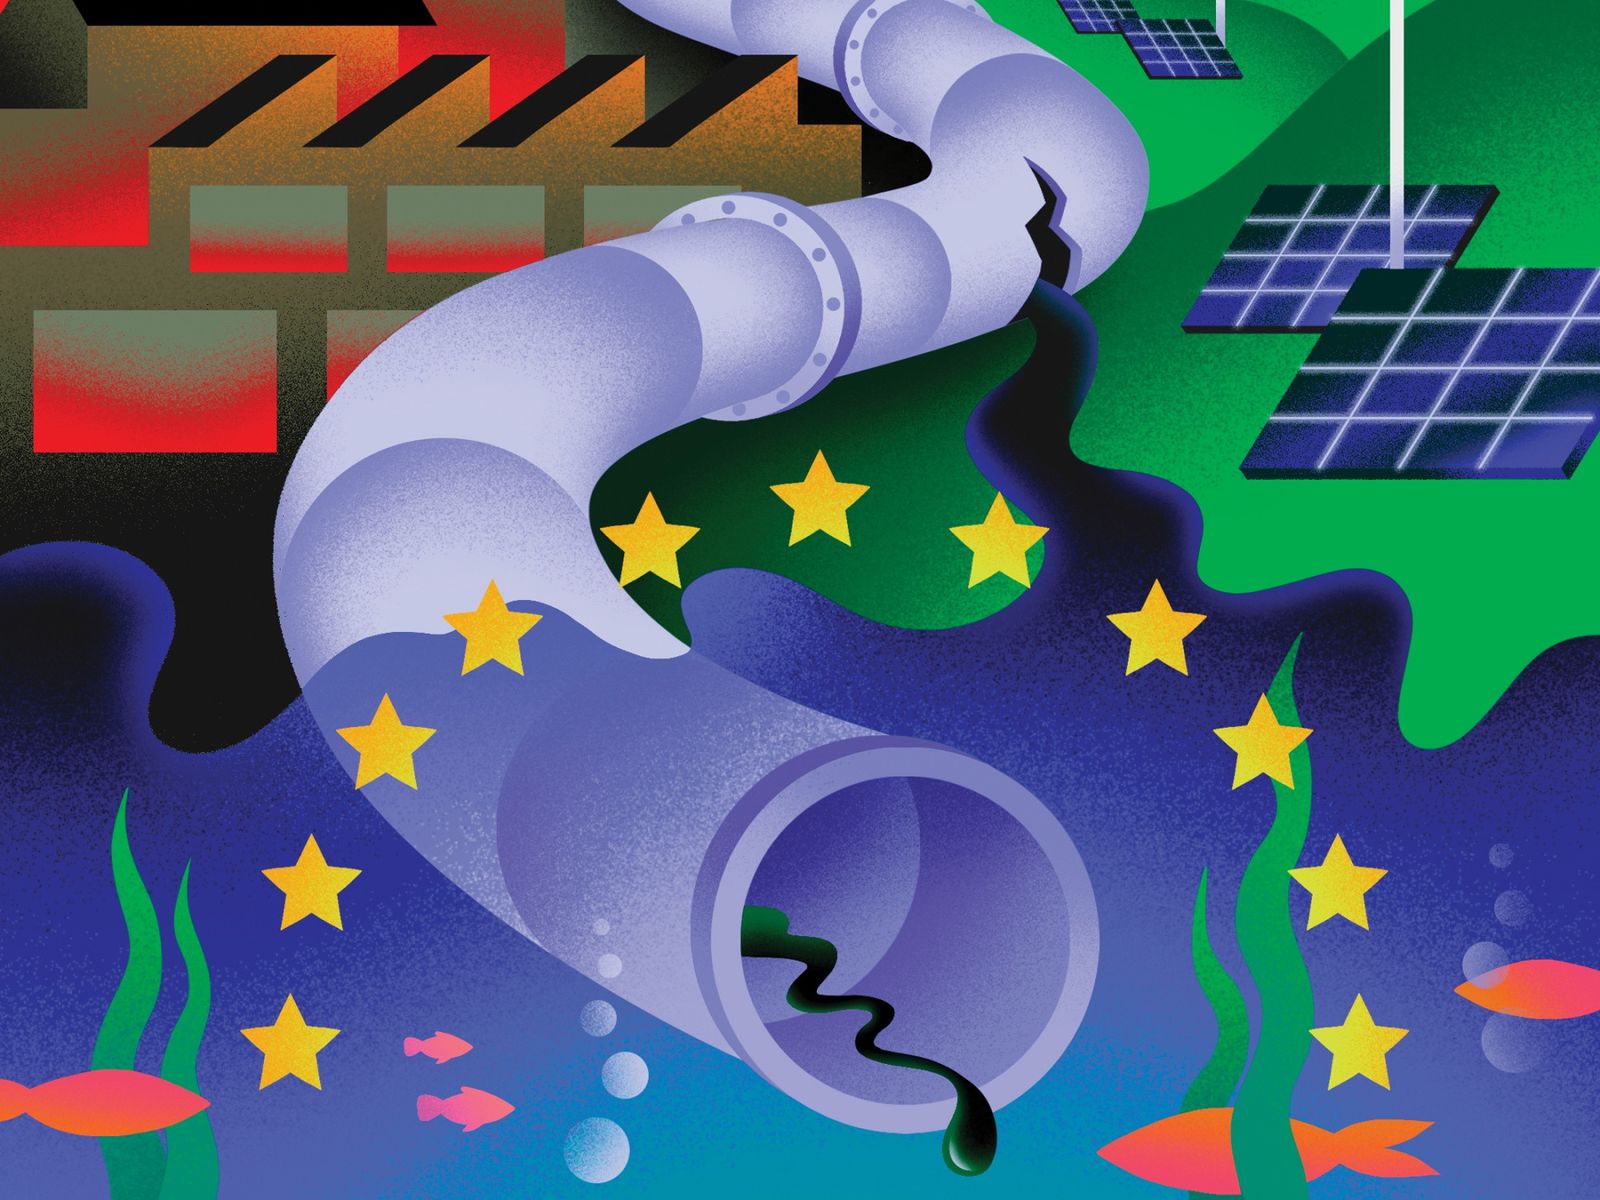 الطاقة المتجددة تزدهر في أوروبا فيما تلوح في أفقها أزمة طاقة